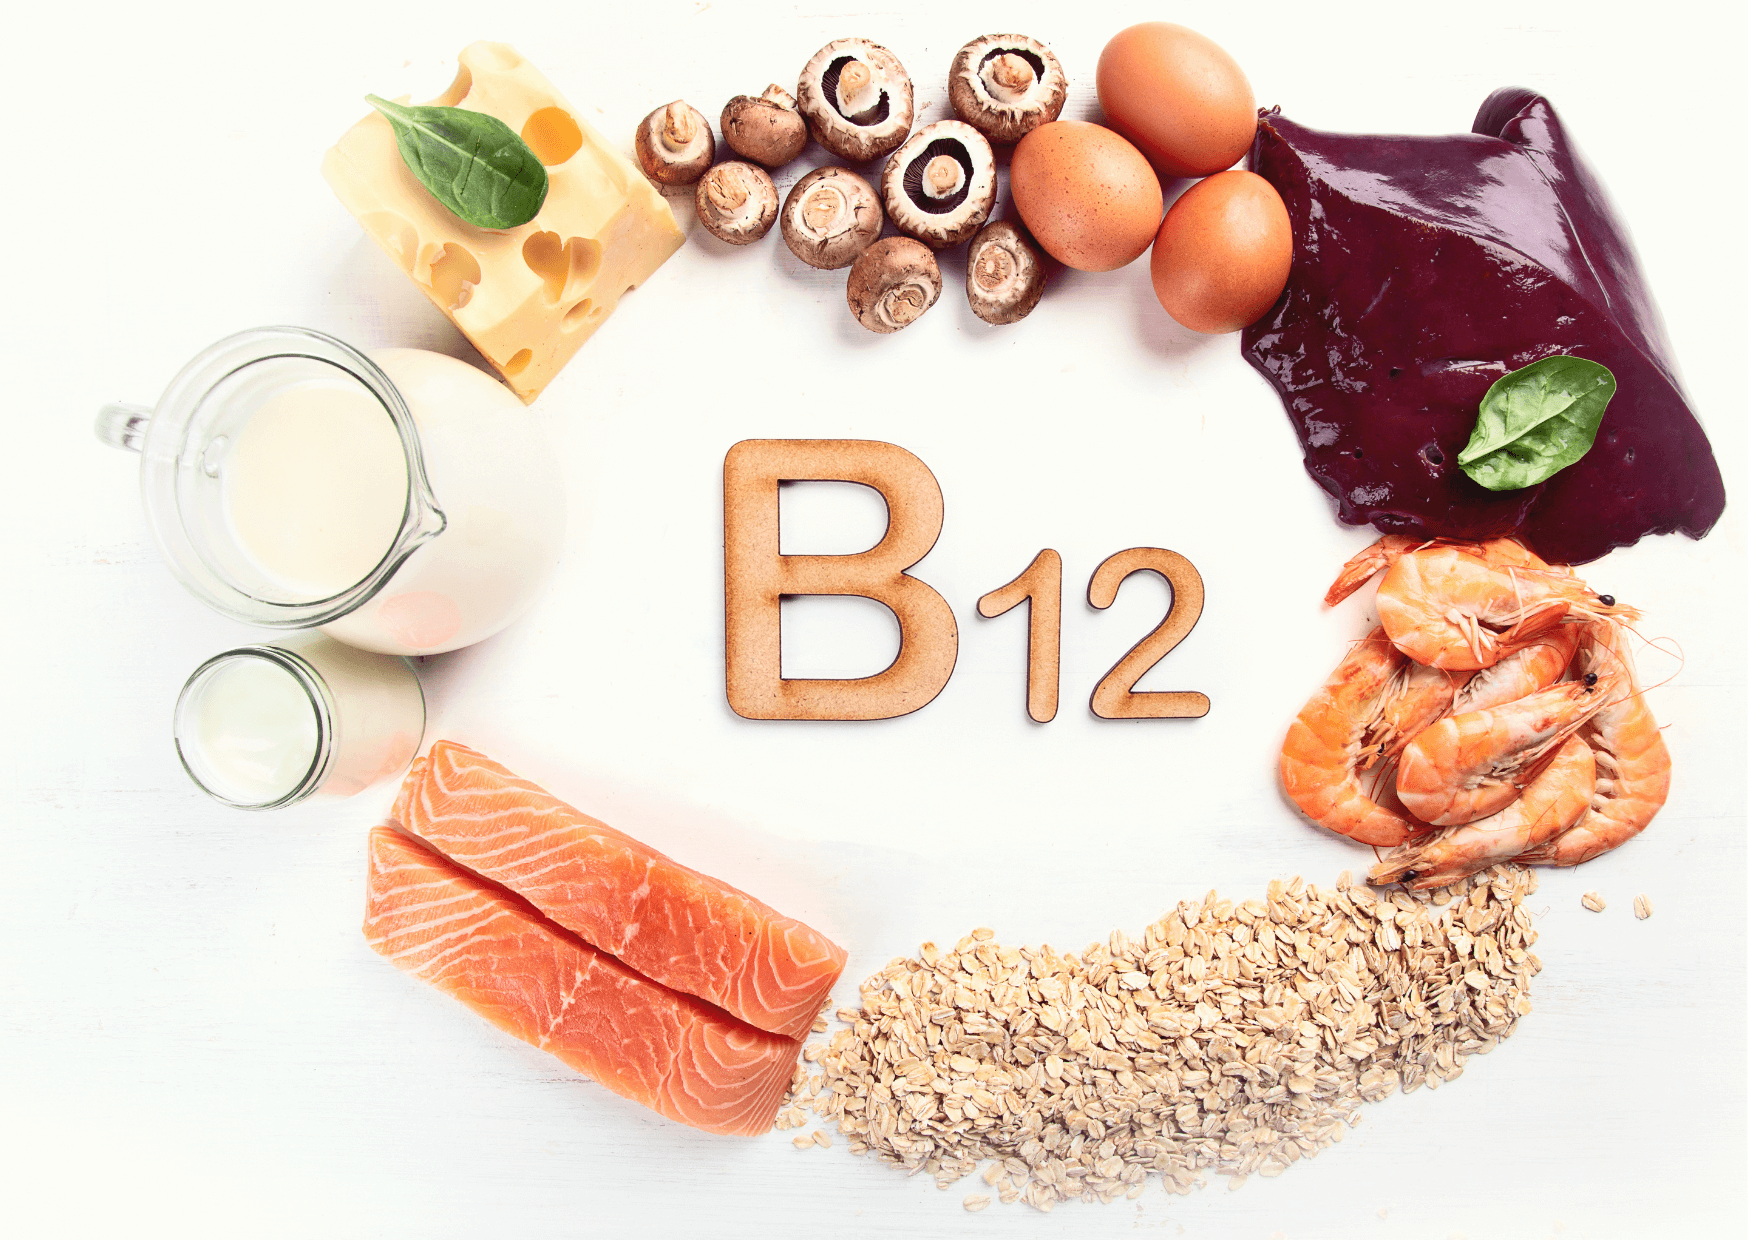 Lomljivi nohti - vitamin B12